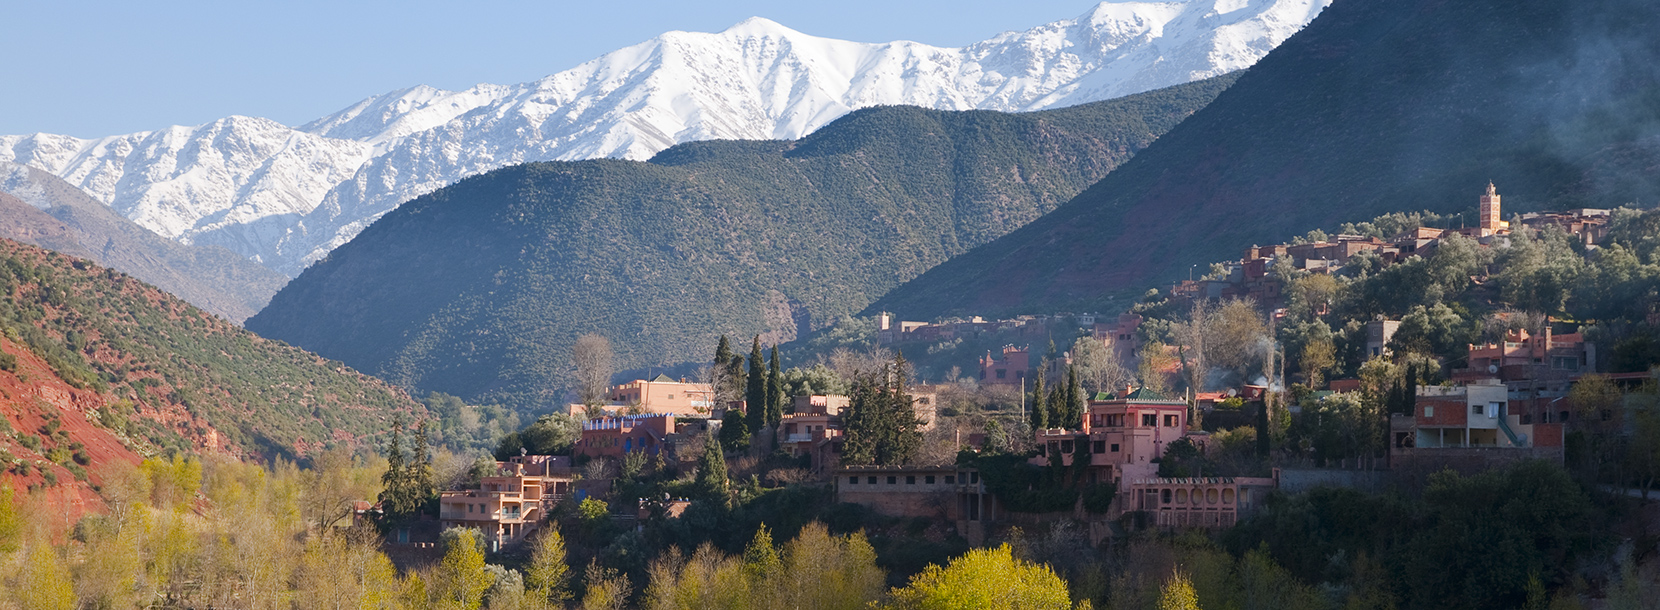 Atlas Mountains of Marrakech